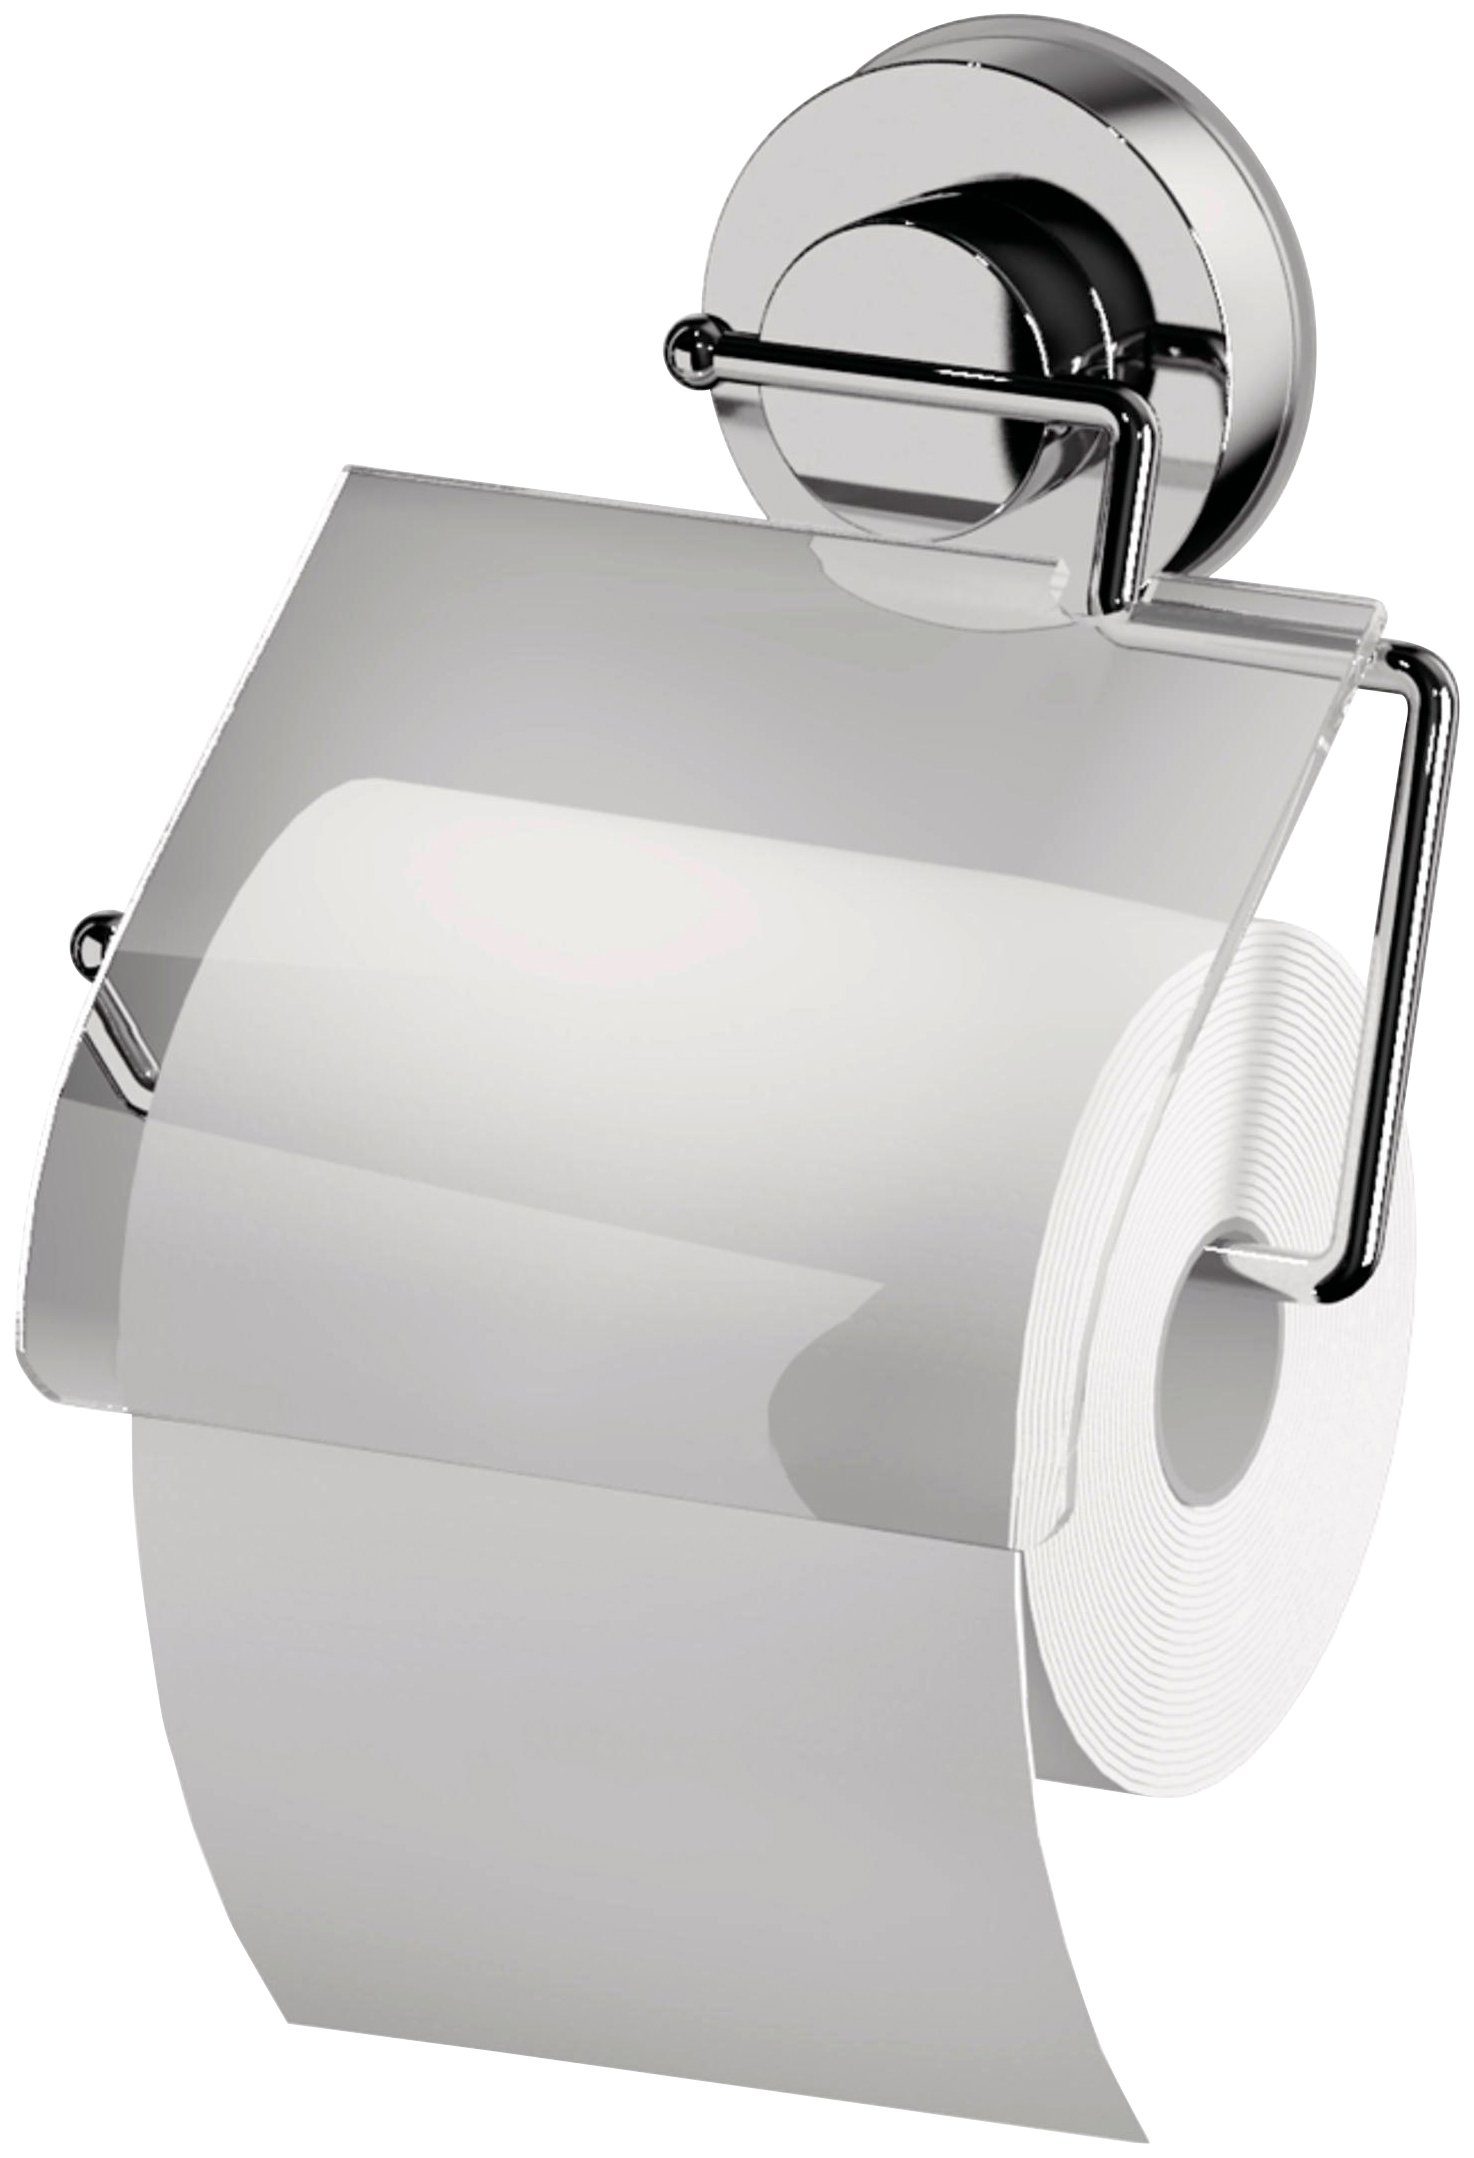 Ridder Toilettenpapierhalter, mit Saugvorrichtung, Bei Verwendung auf  Tapete nicht rückstandslos entfernbar | Toilettenpapierhalter